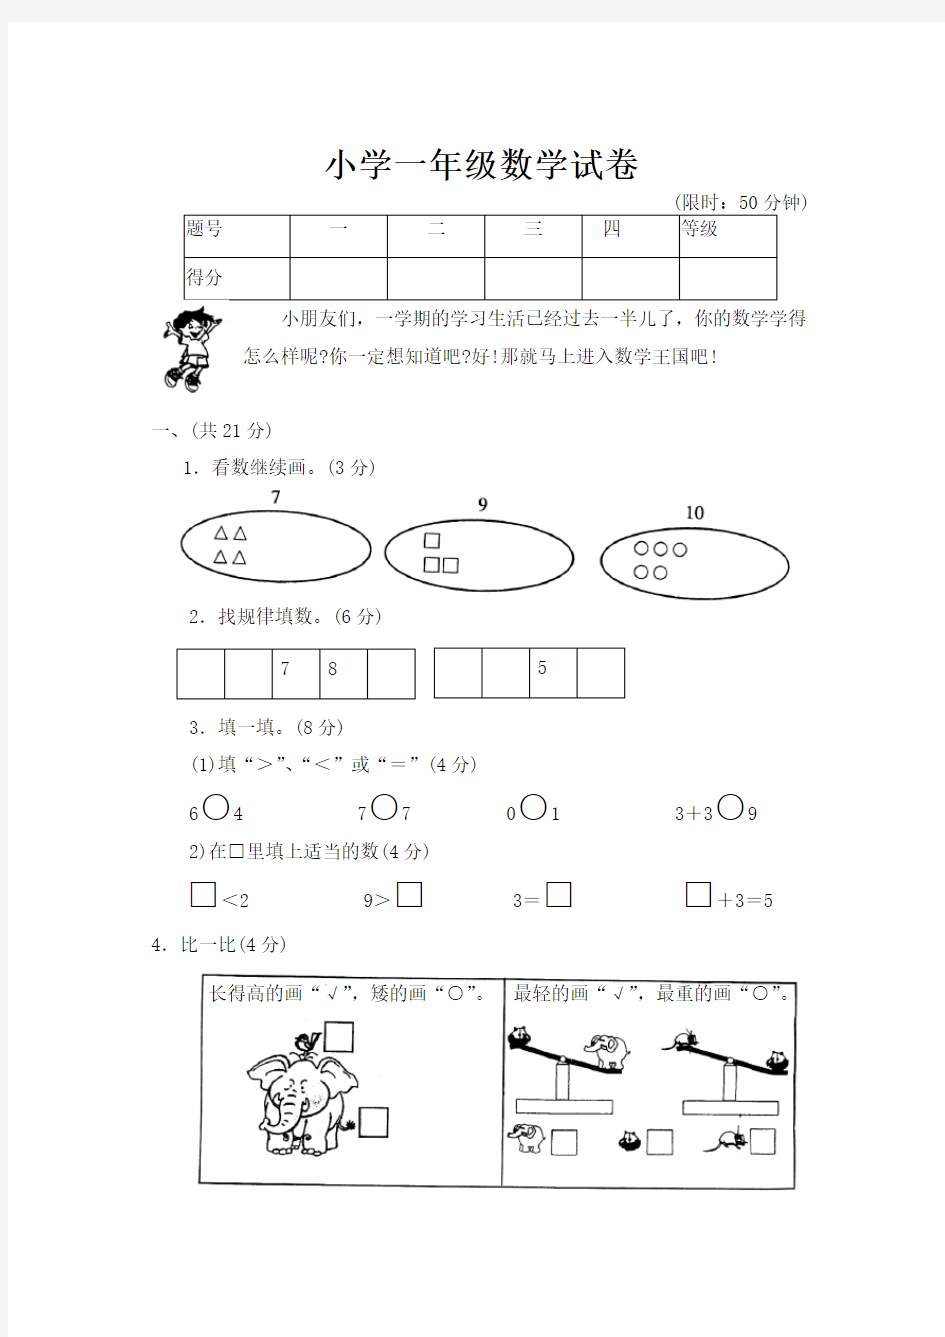 (完整版)北京小学一年级数学试卷